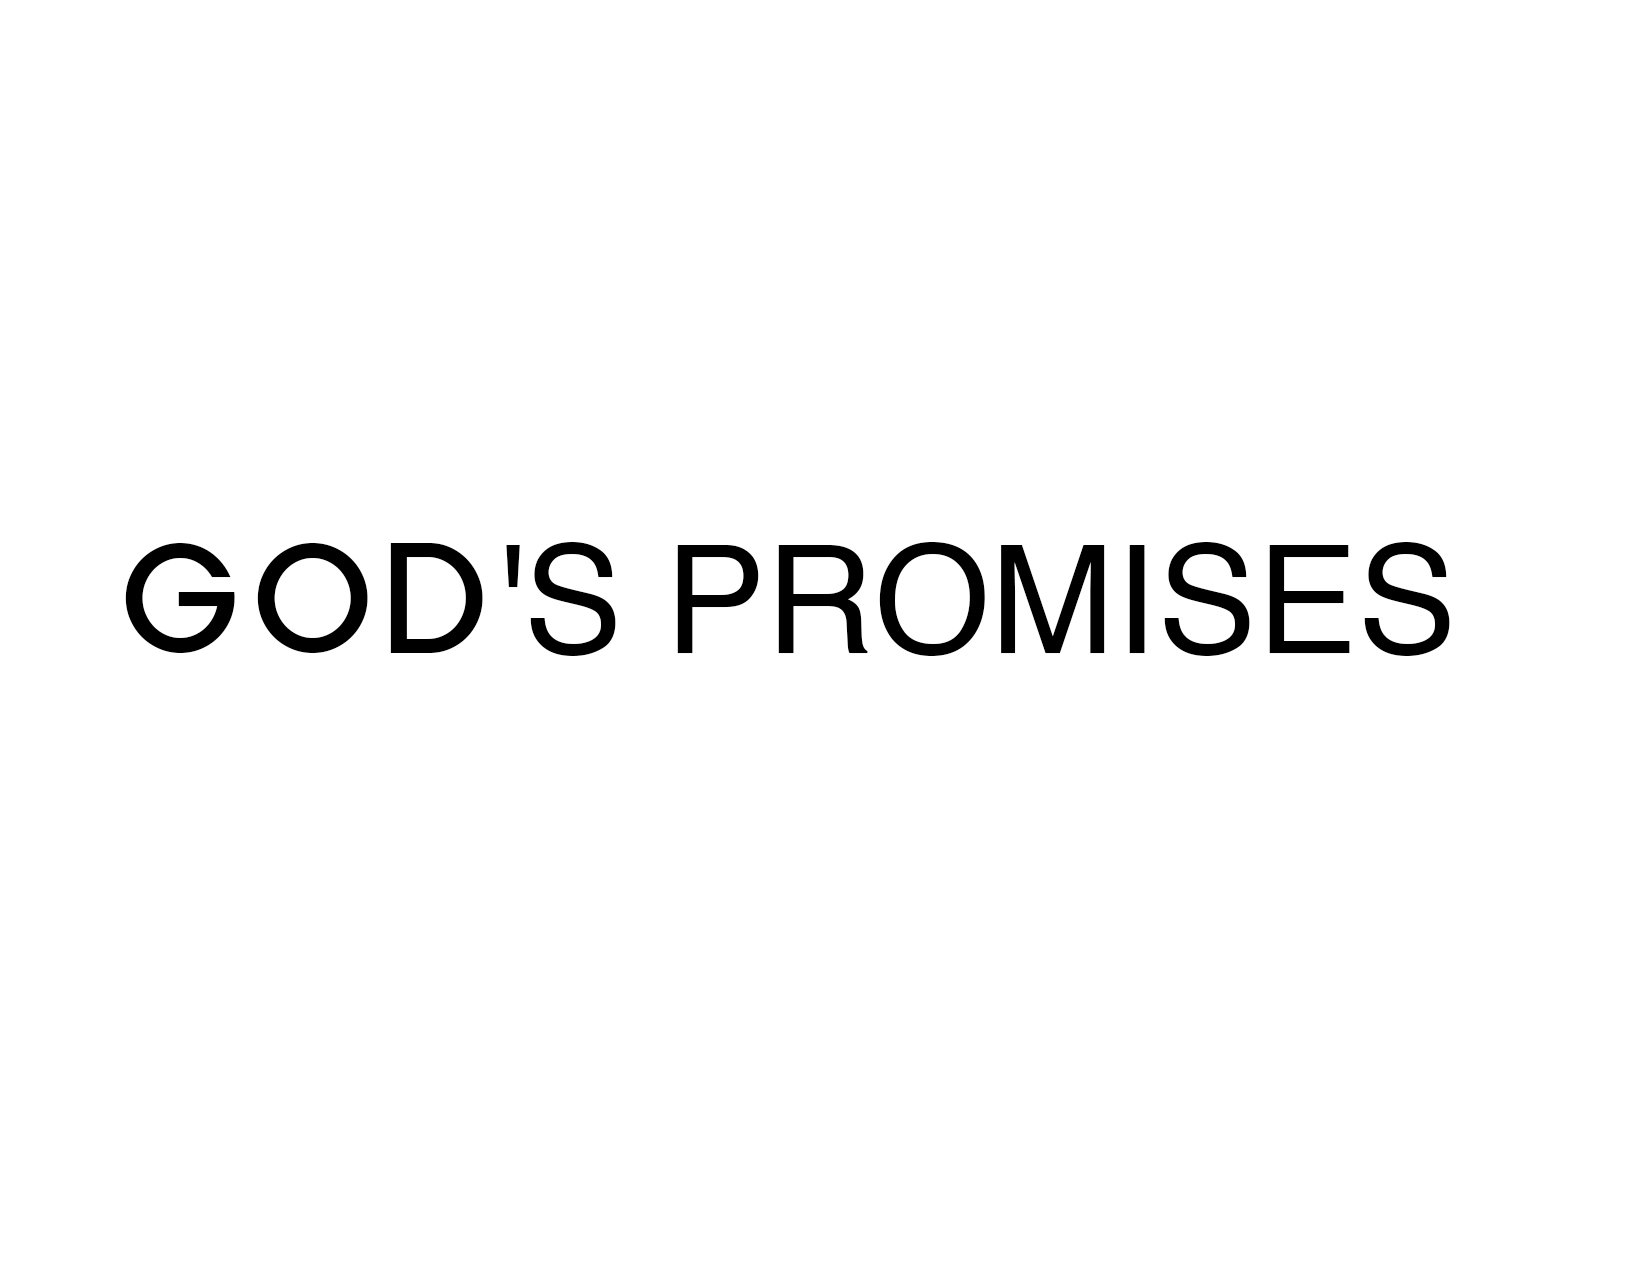 Contending for God's Promises